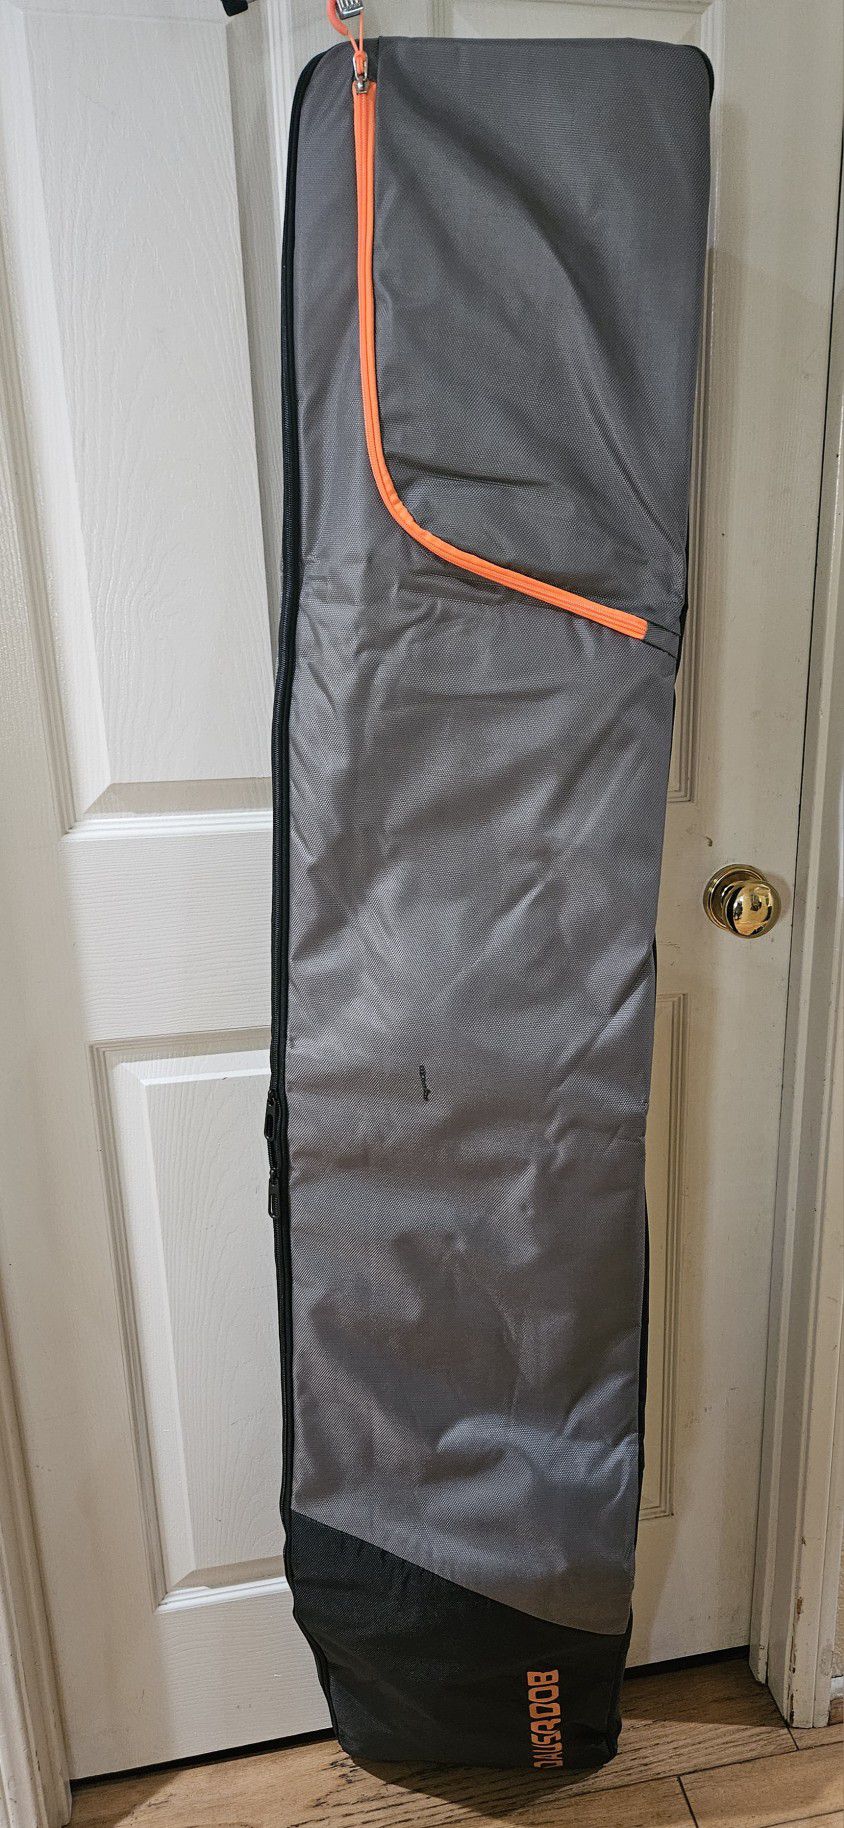 Snowboard Travel Bag 1680D Reinforced Snowboard Bag